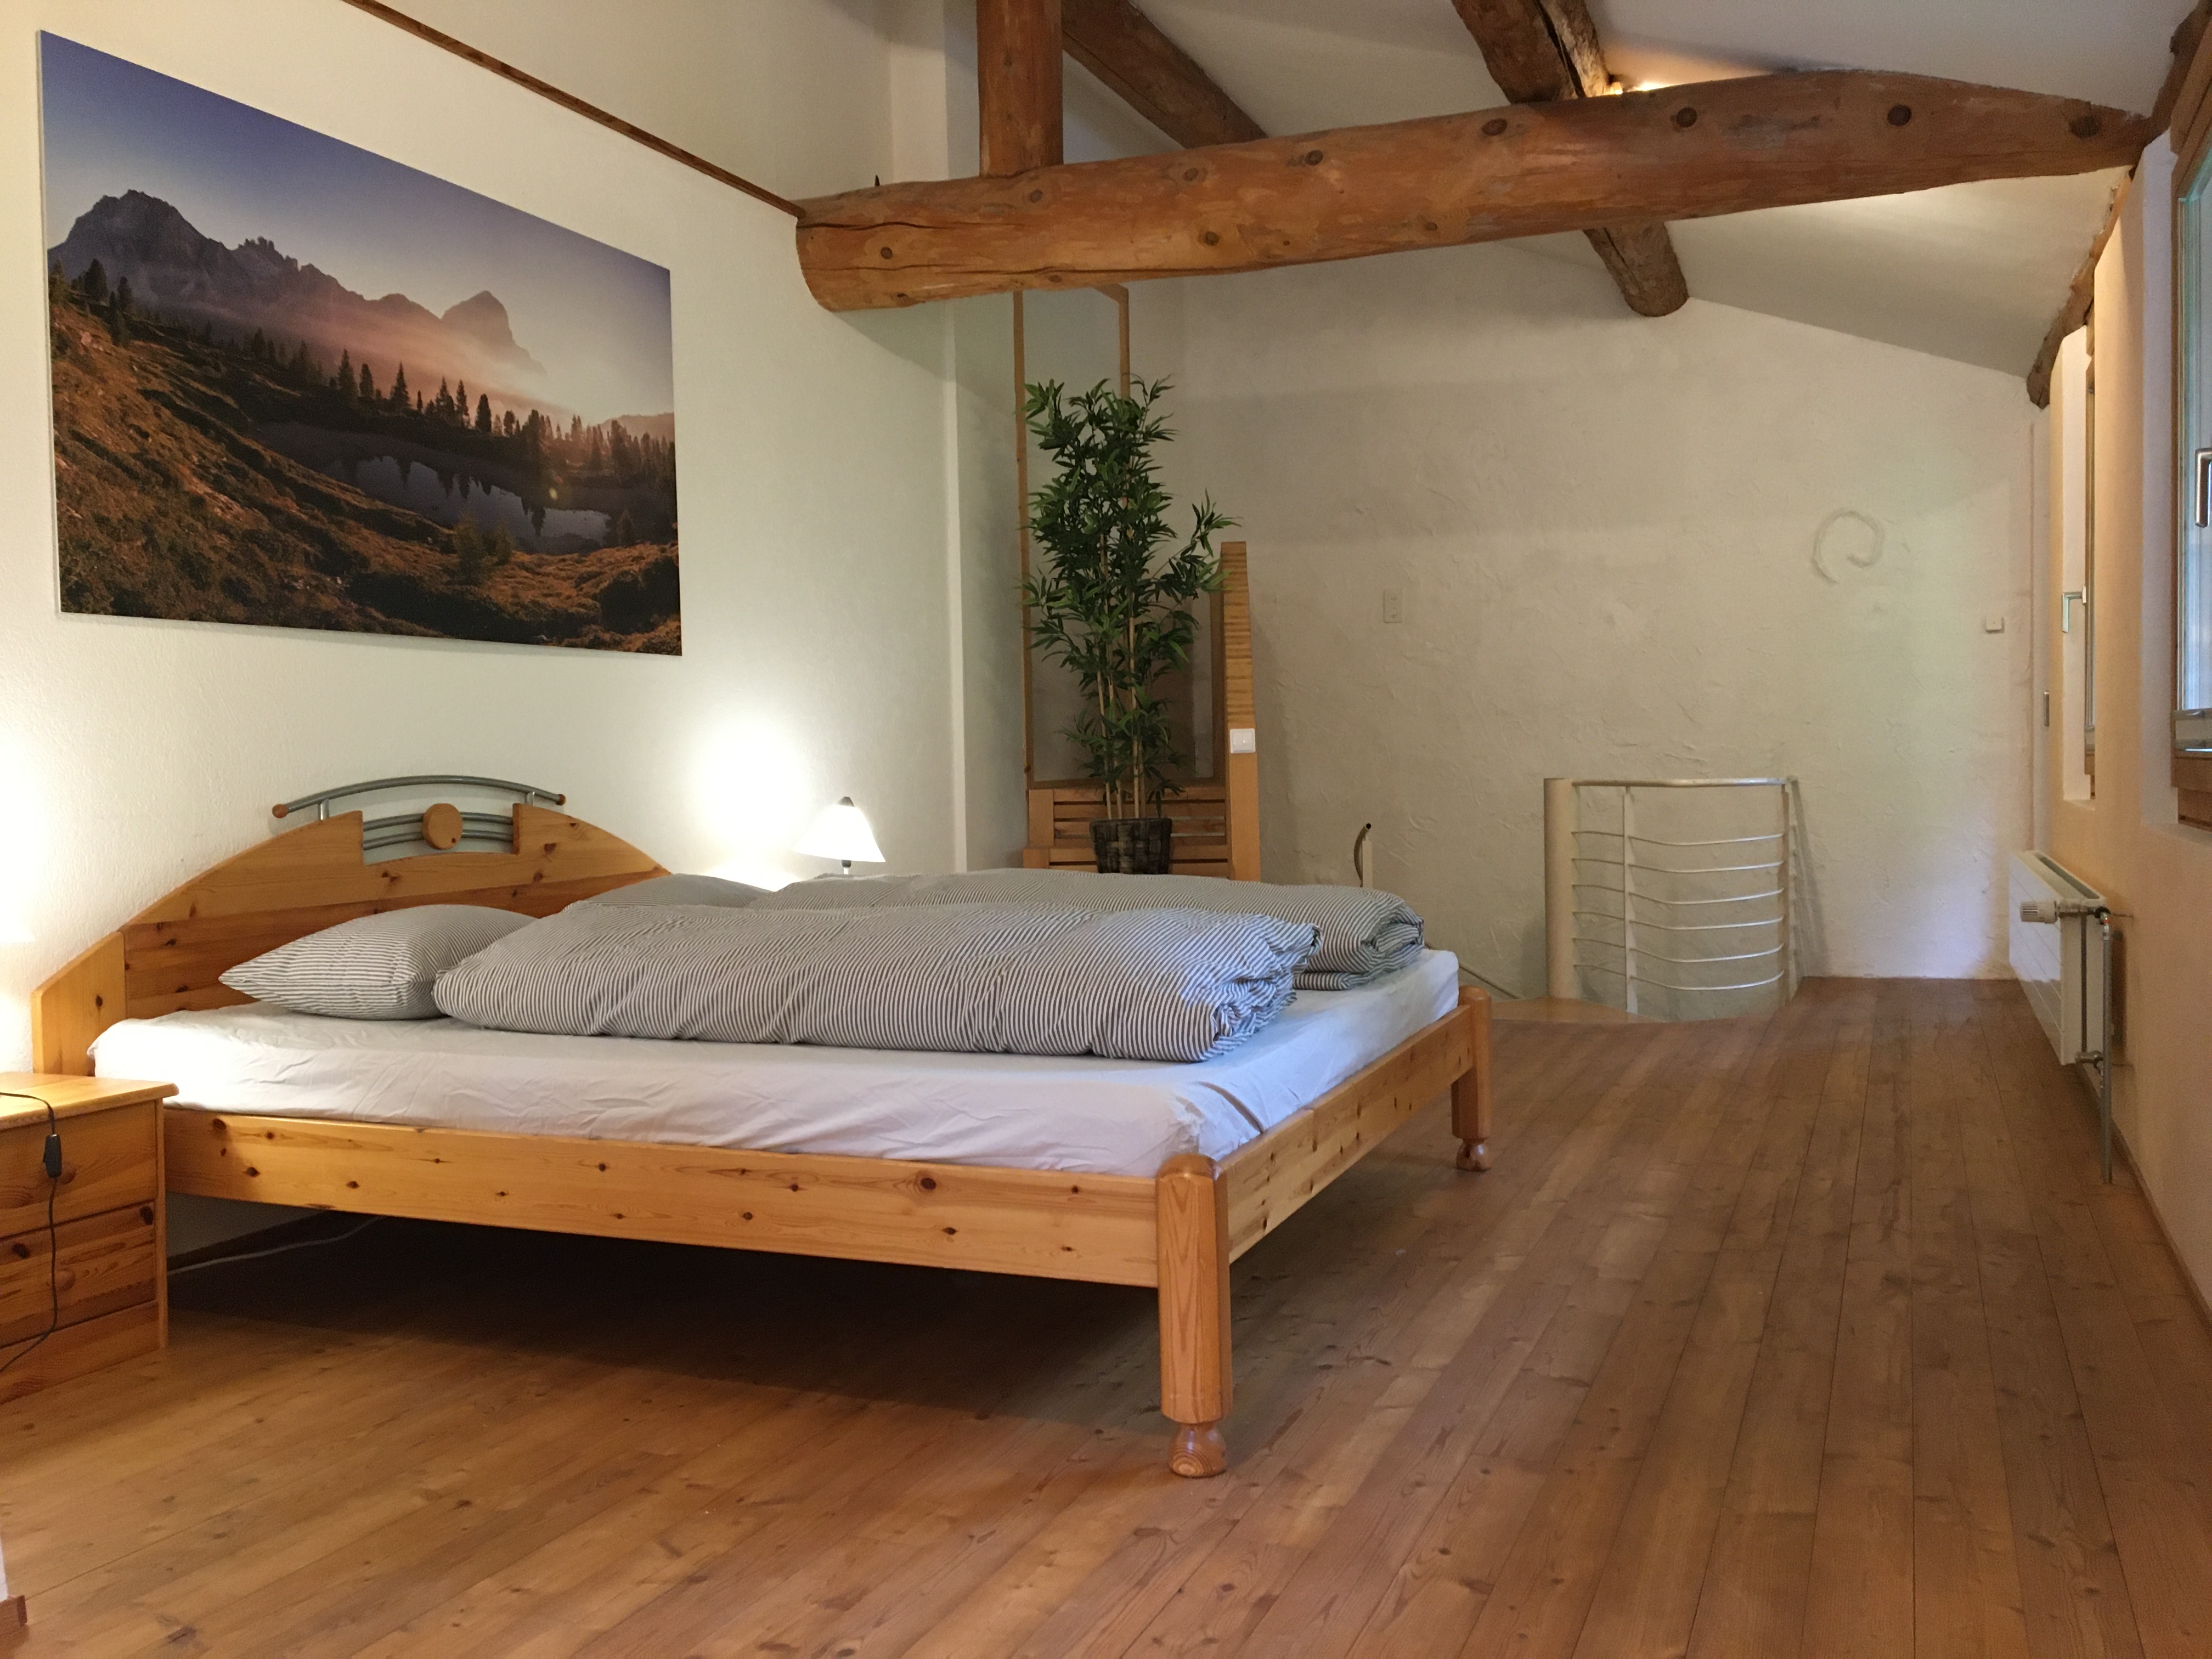 Ferienwohnung in Graubünden - Wohnungen zur Miete in Says, Graubünden,  Schweiz